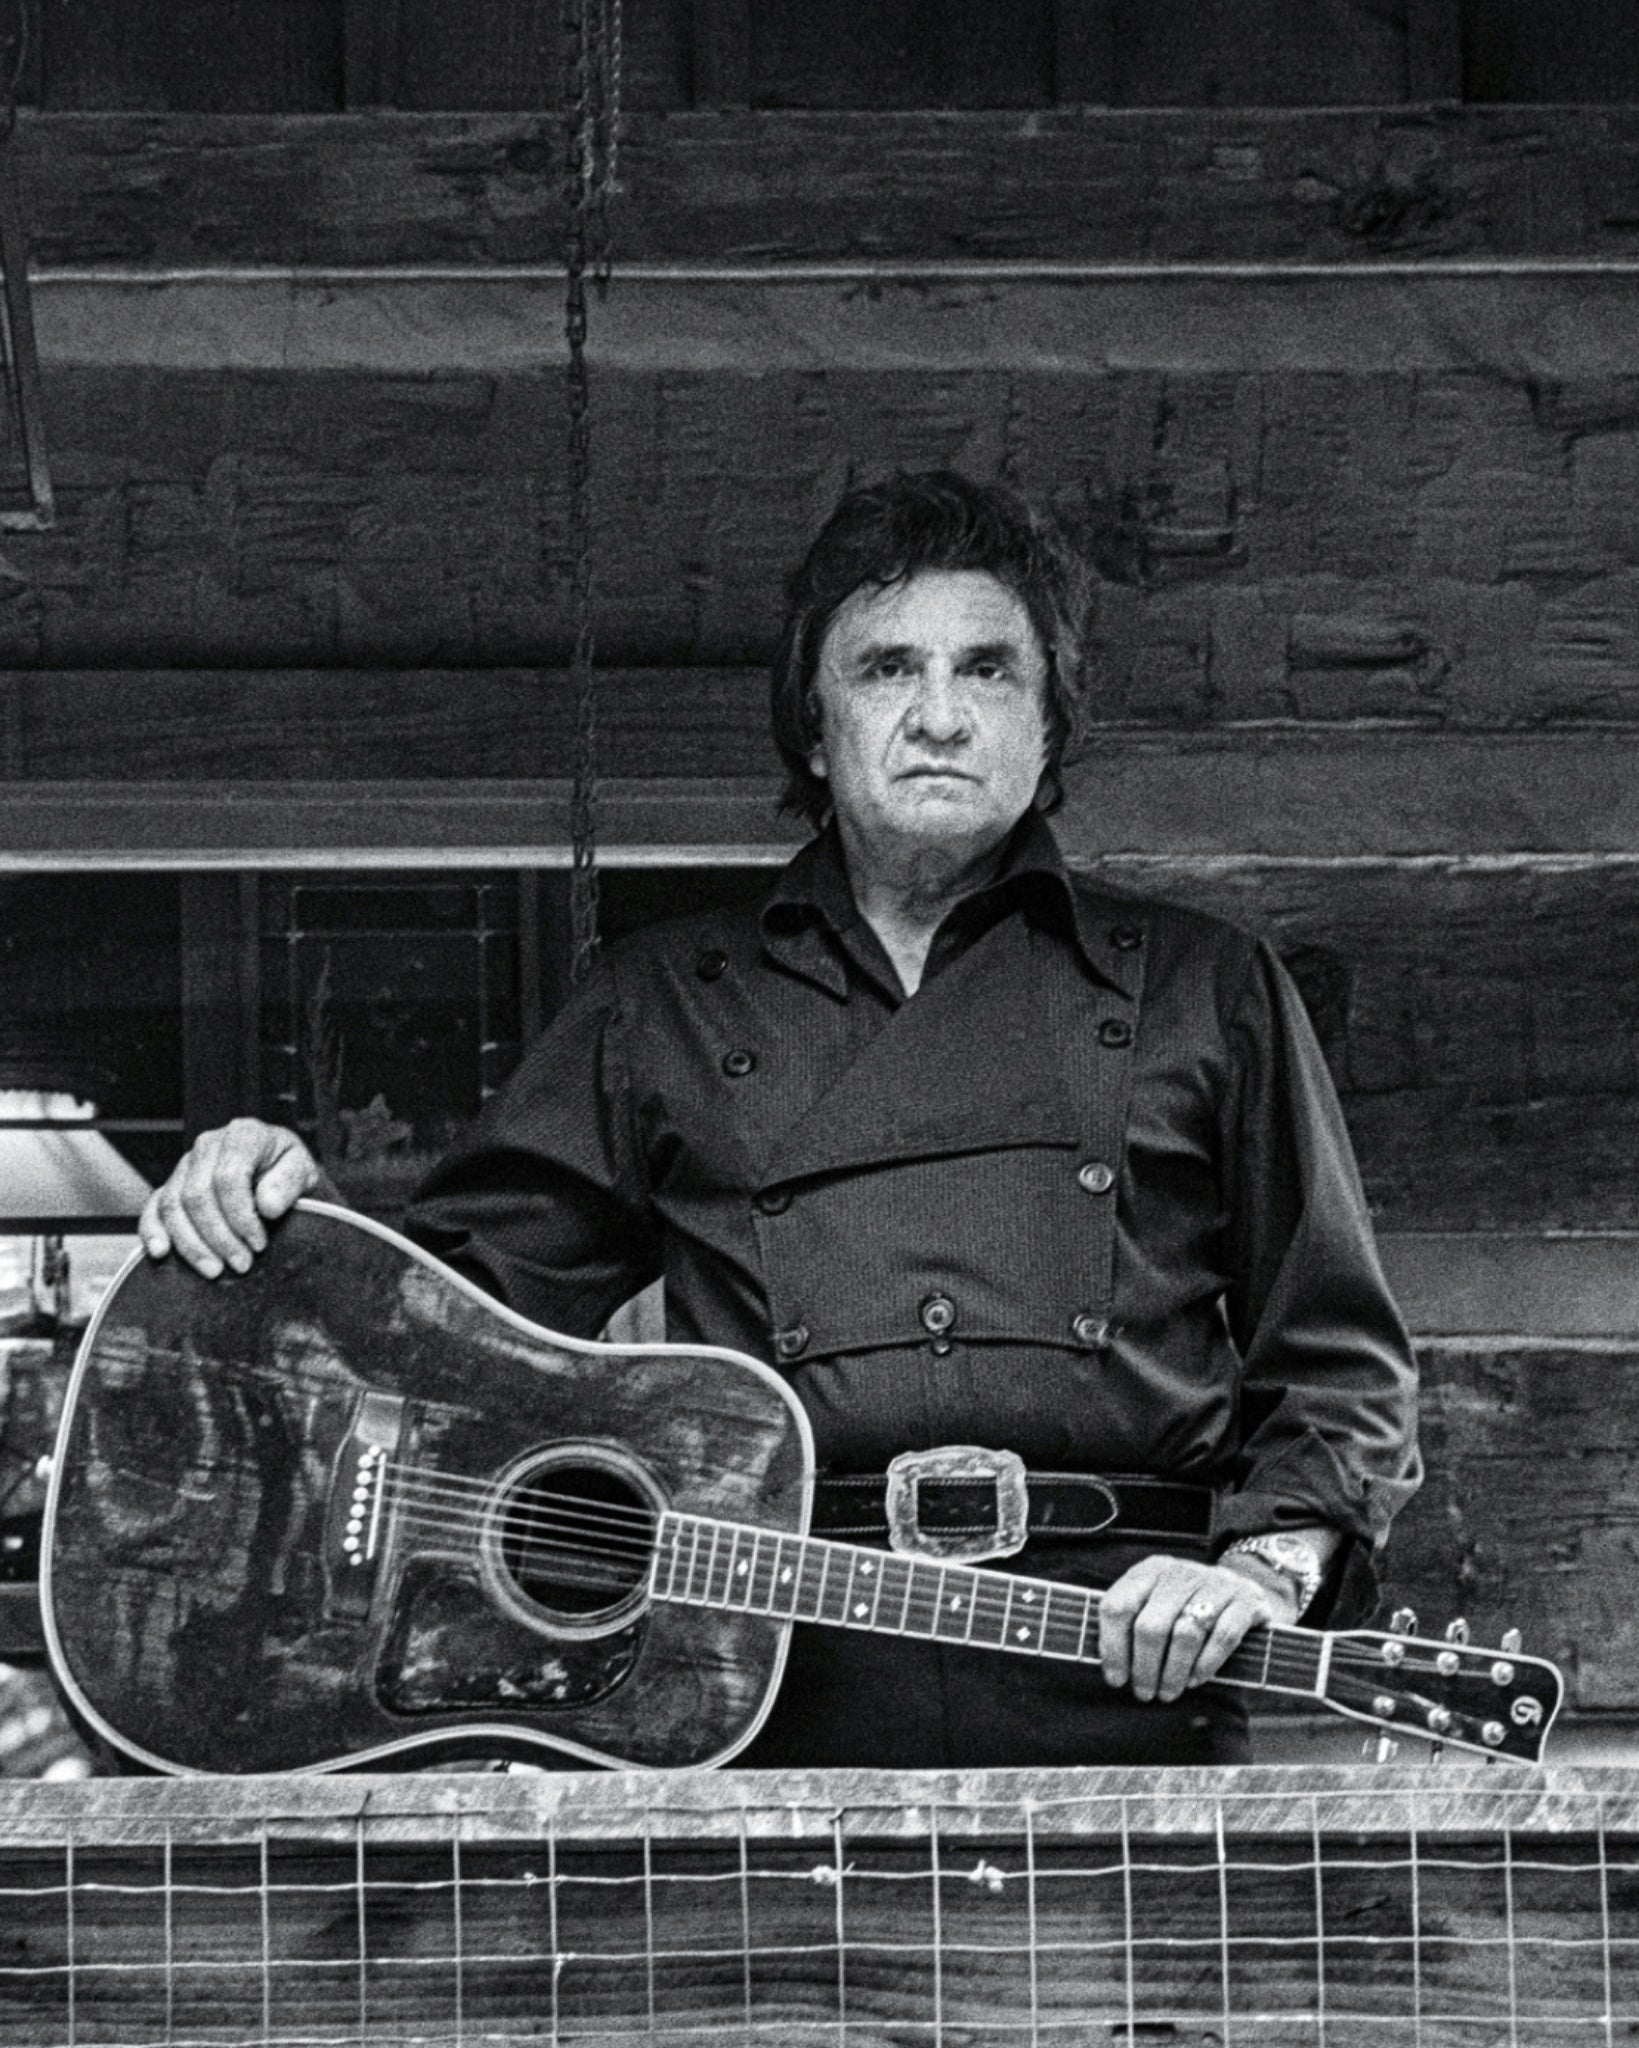 Dieper in de Ziel van 'the man in black' : Johnny Cash's "Songwriter" onthult Verborgen Meesterwerken